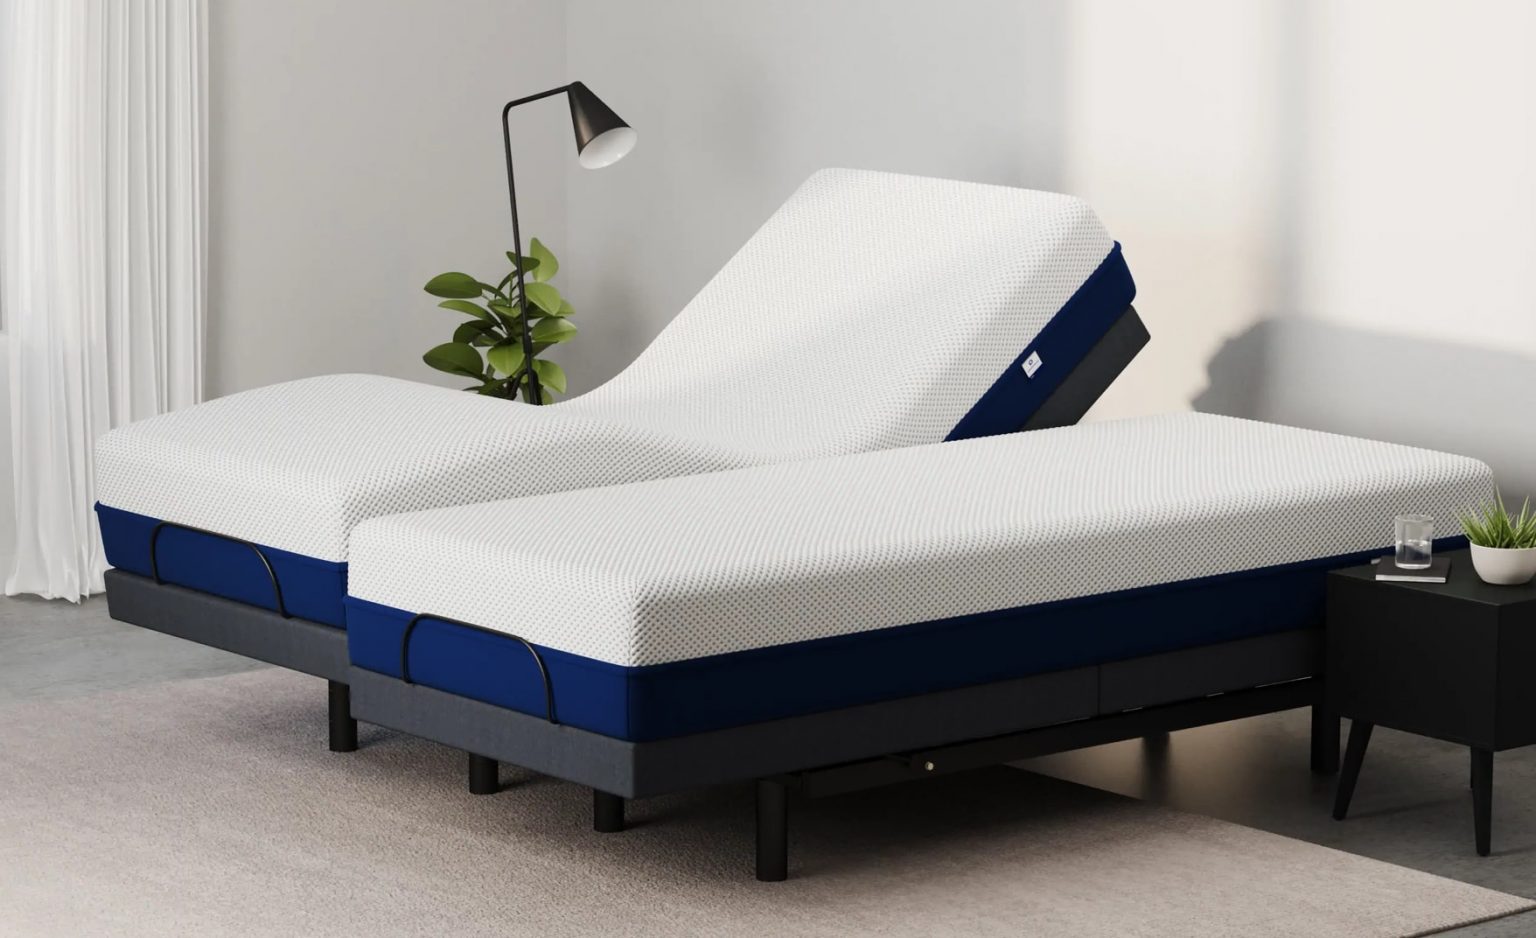 Best Split King Adjustable Bed Of 2022, Best Split King Adjustable Bed 2020